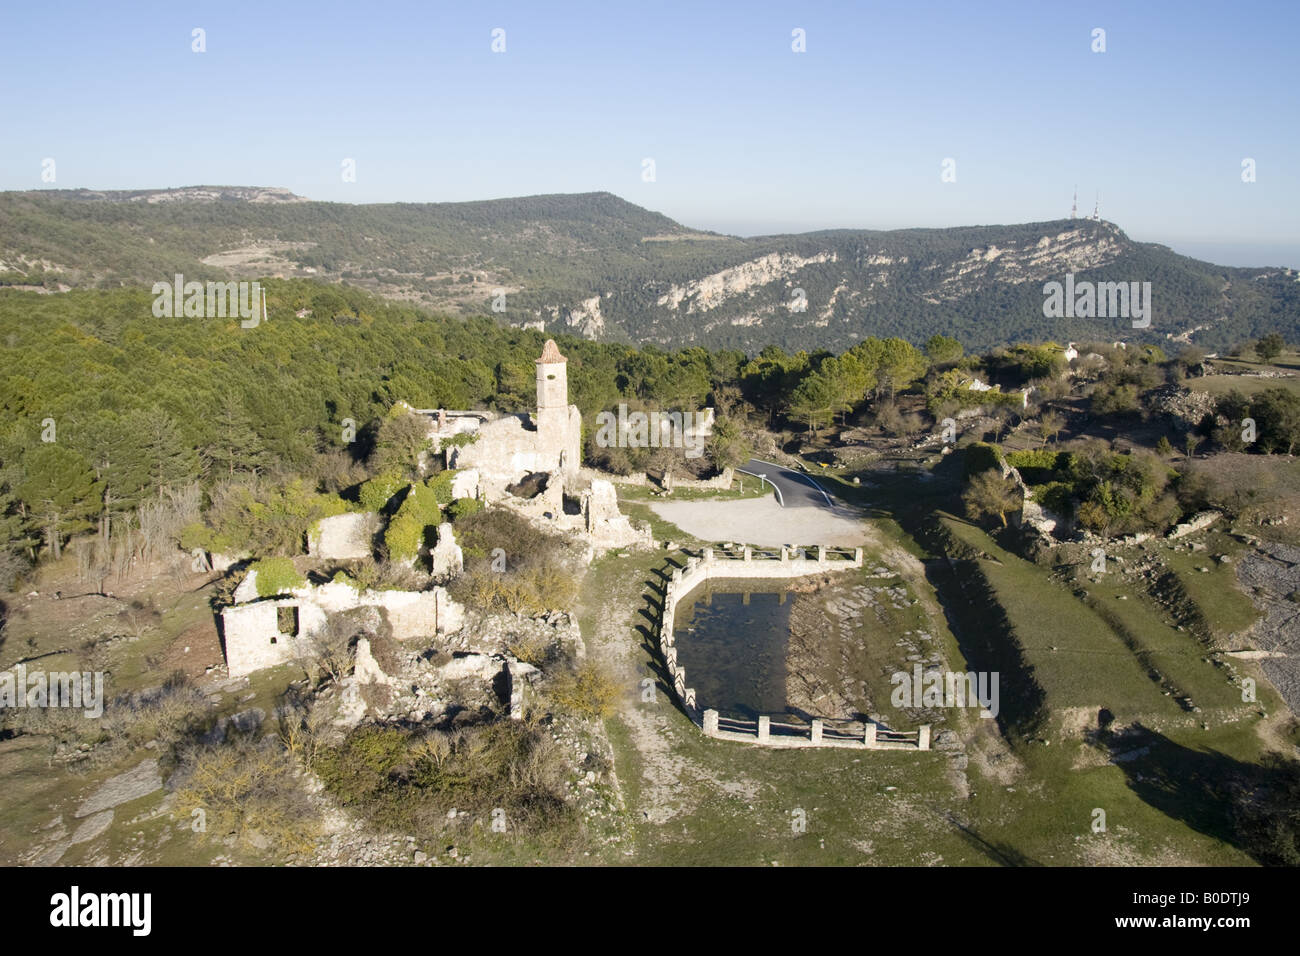 La mussara, villaggio abbandonato di Tarragona. vista aerea Foto Stock